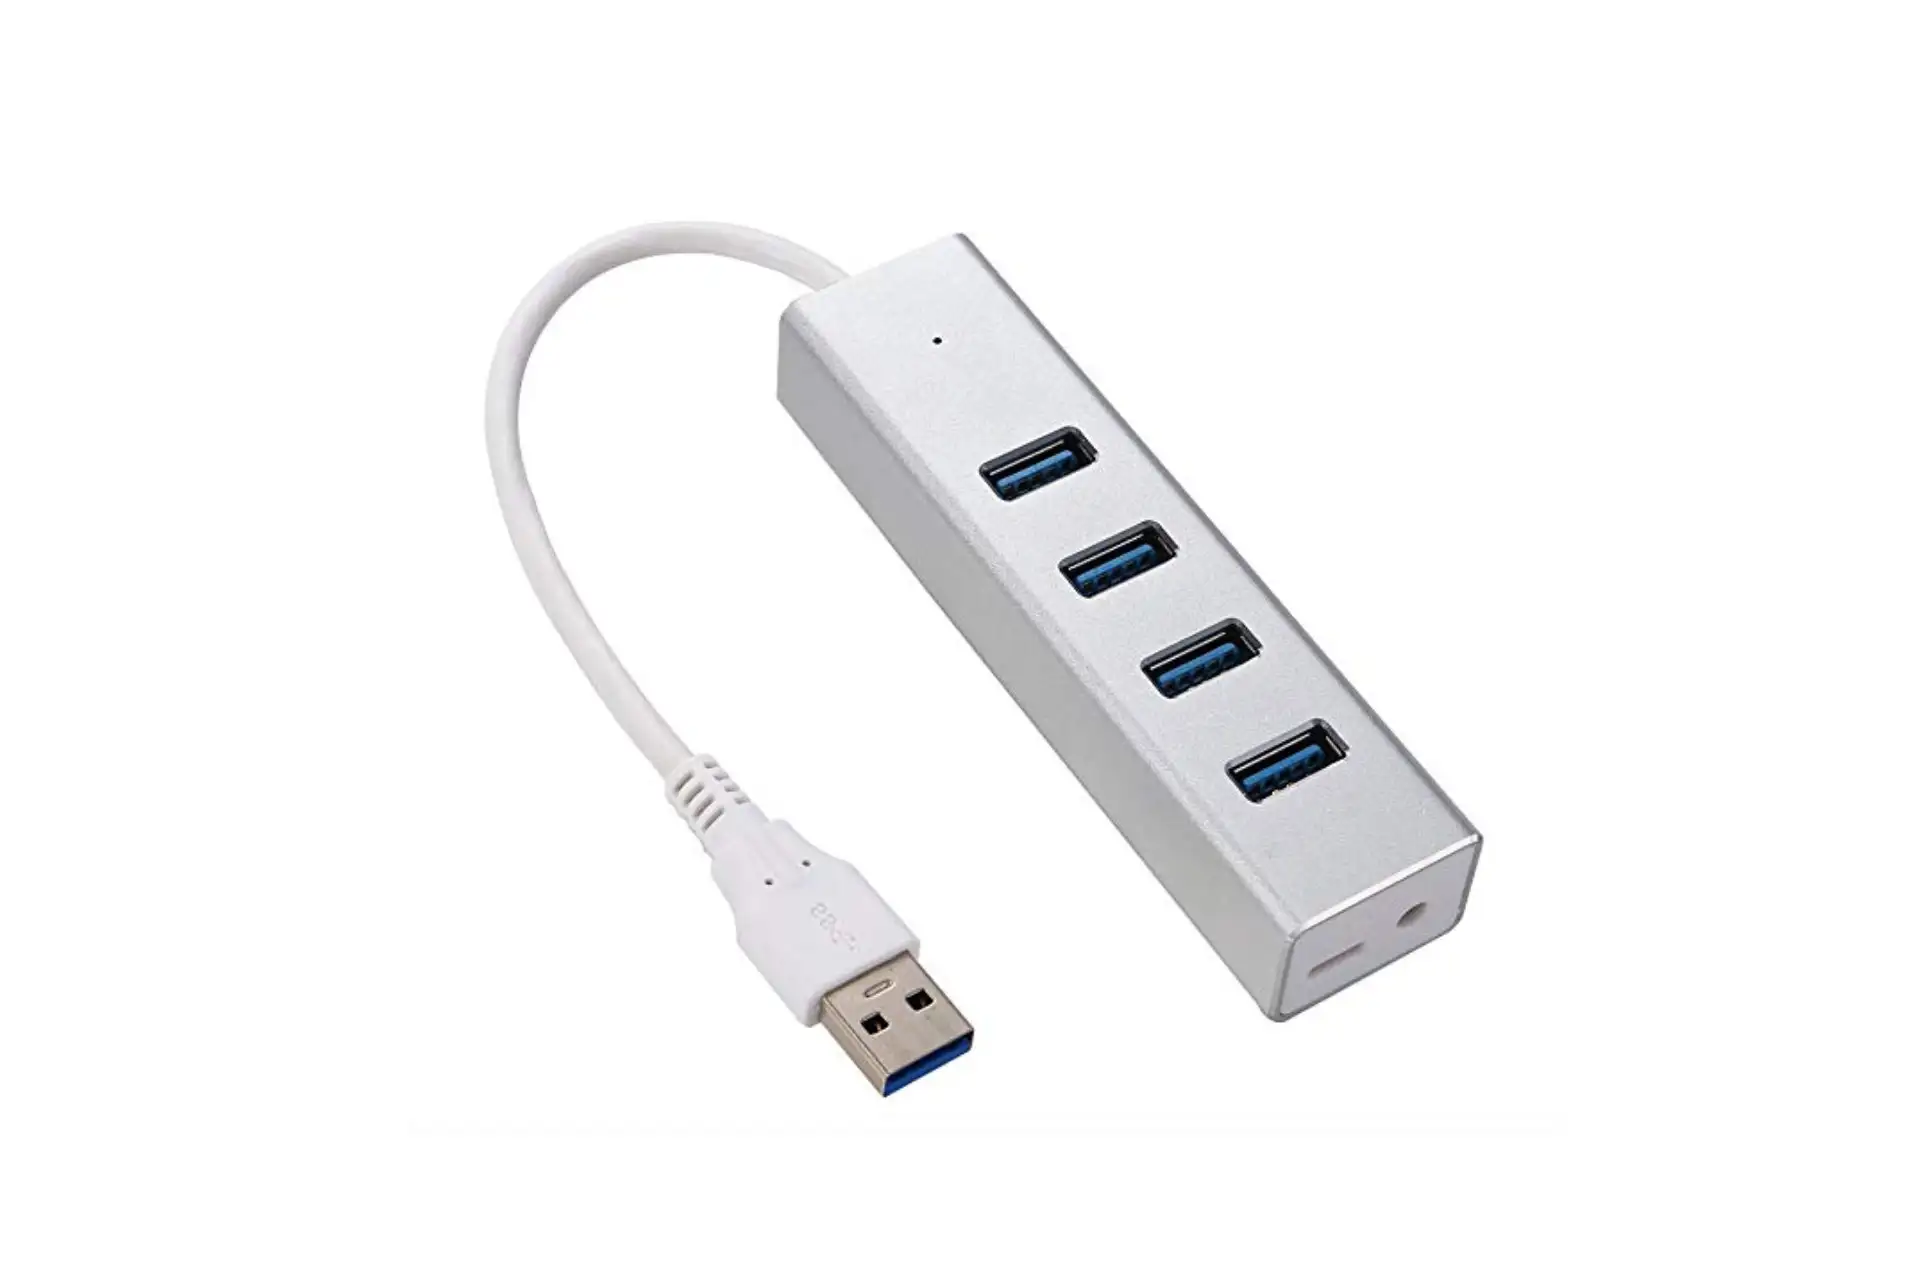 USB Port; Courtesy of Amazon